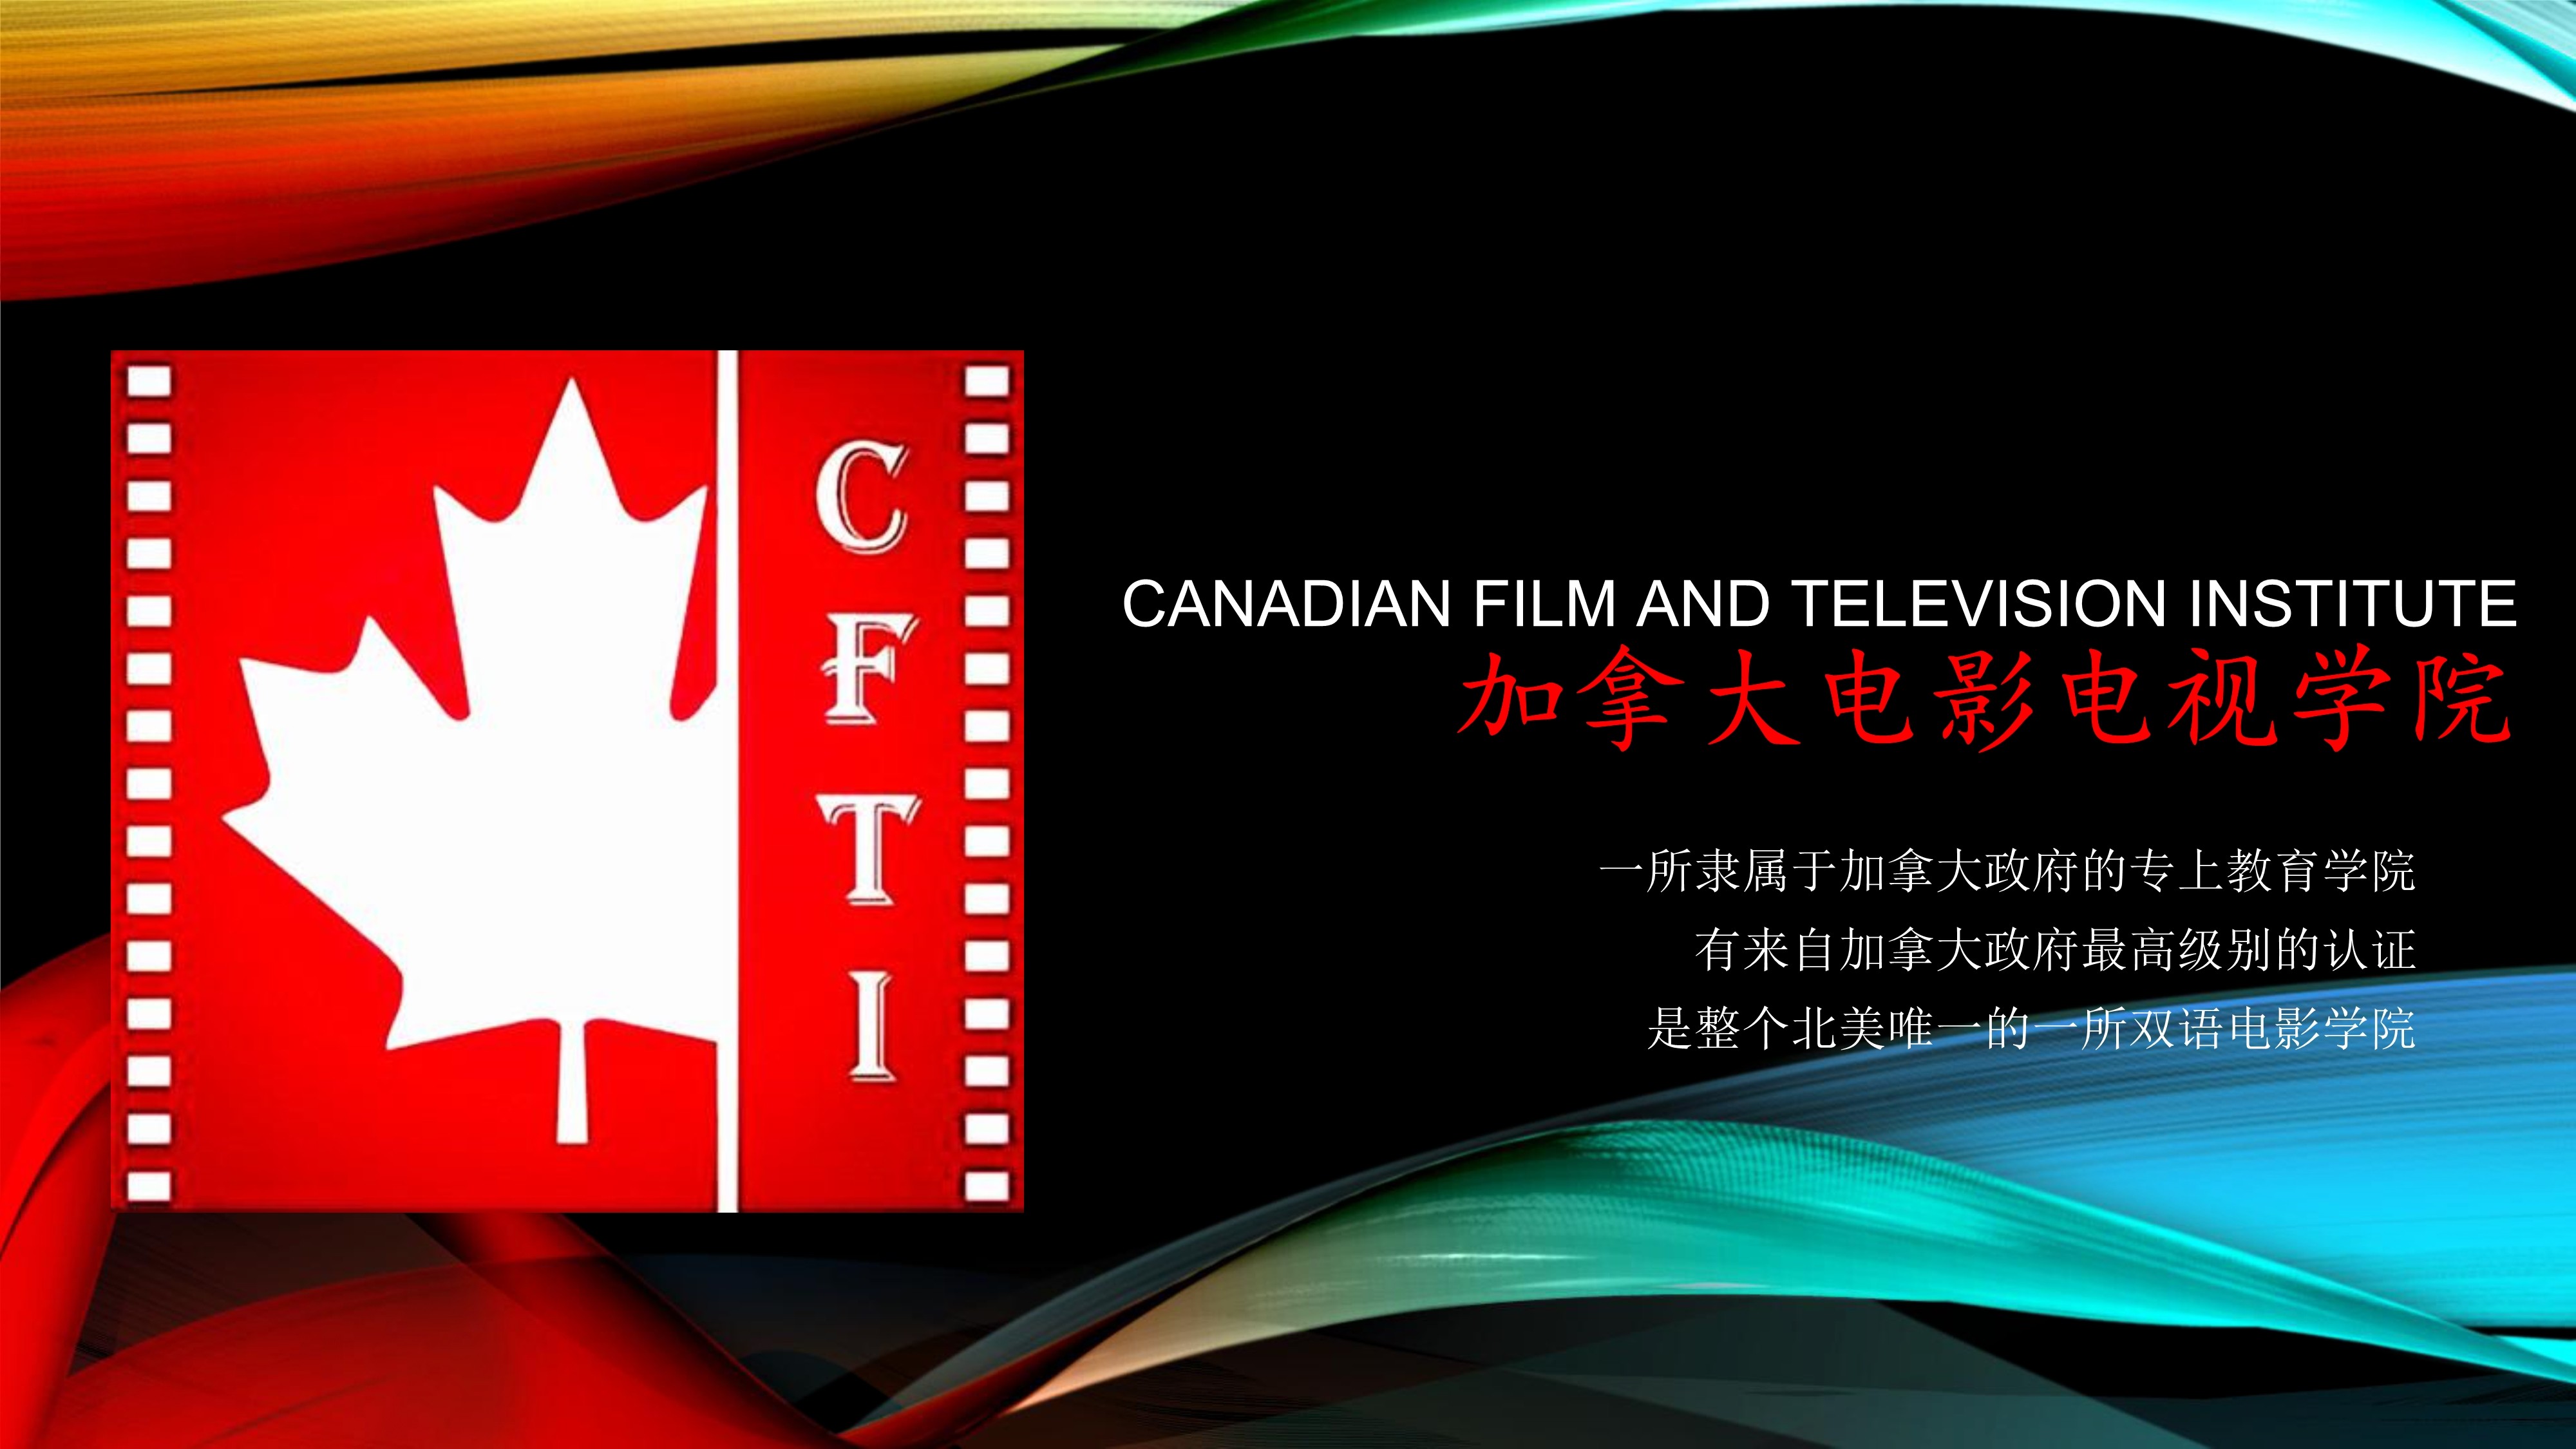 031616484170_0加拿大电影电视学院招生简介_1.Jpeg